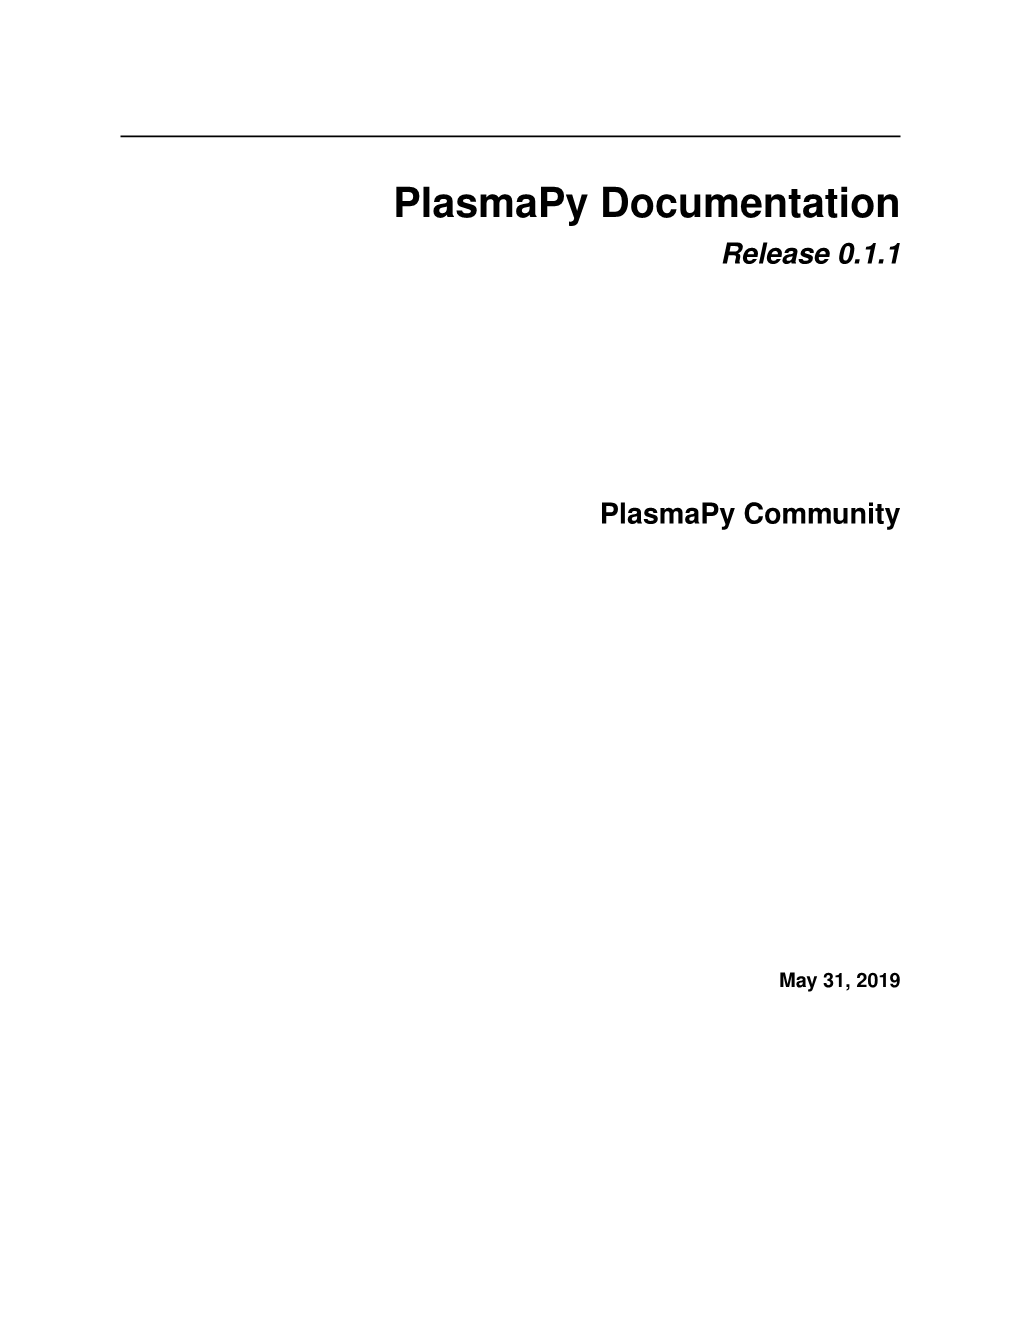 Plasmapy Documentation Release 0.1.1